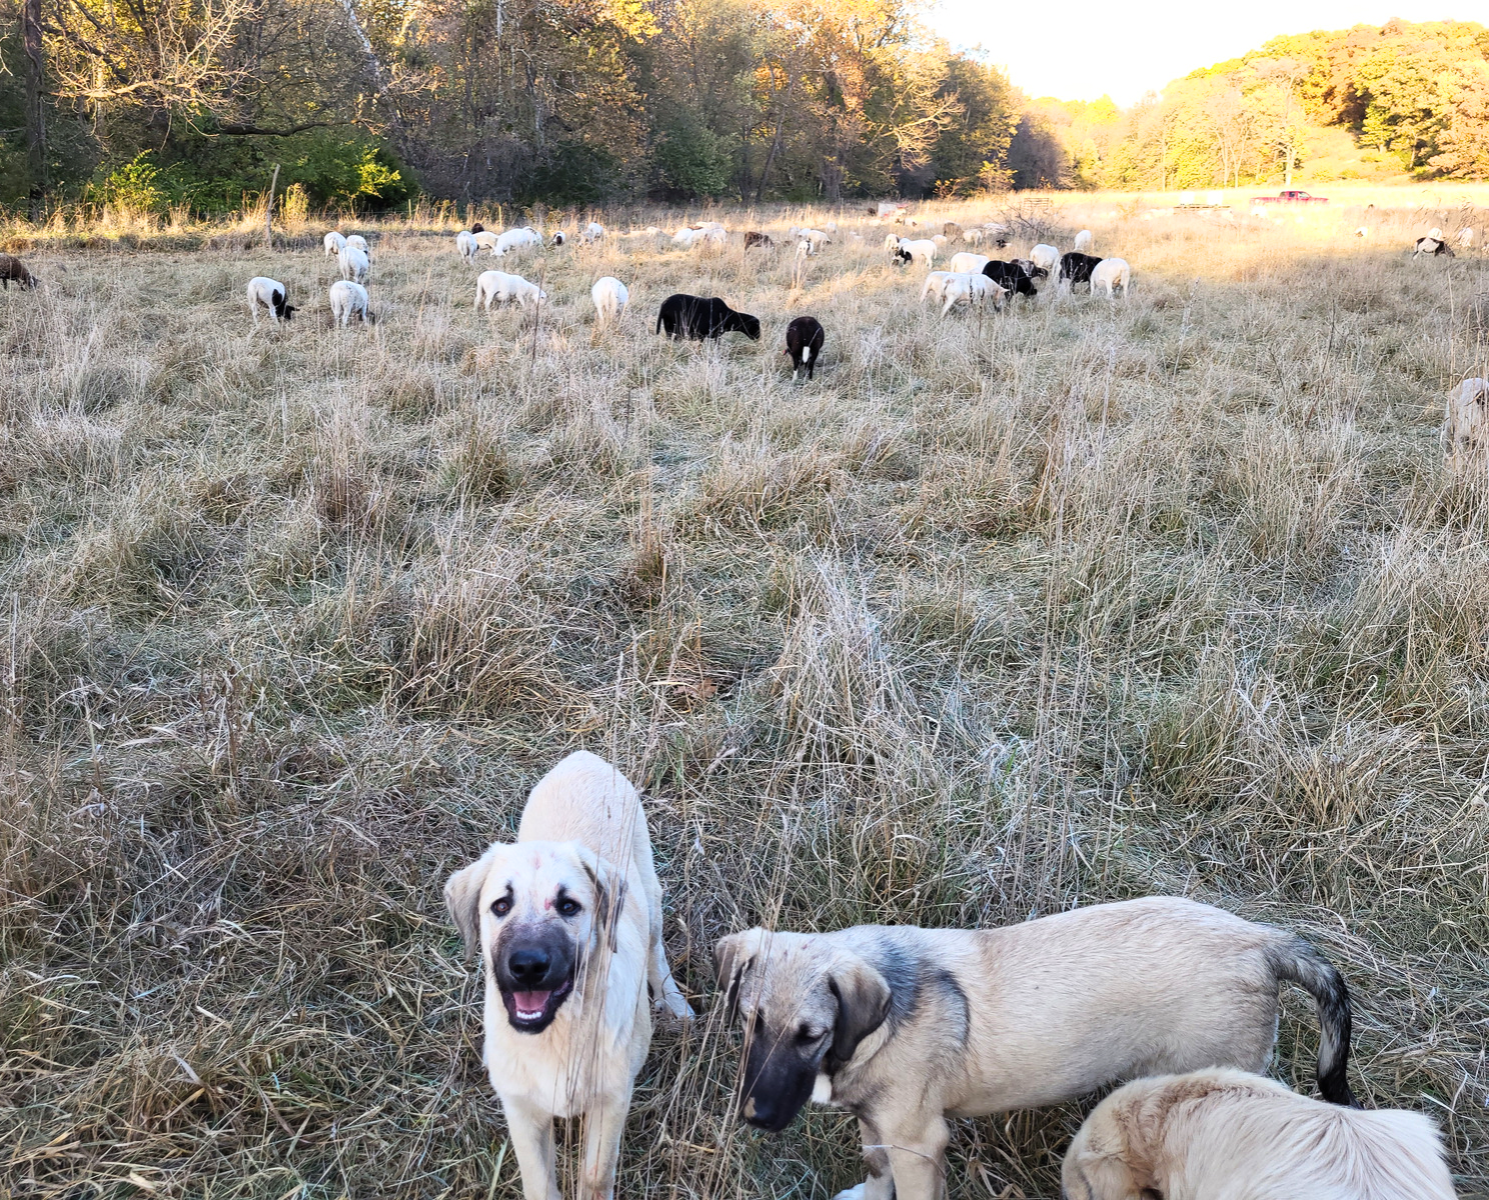 grassfed lamb, guard pups